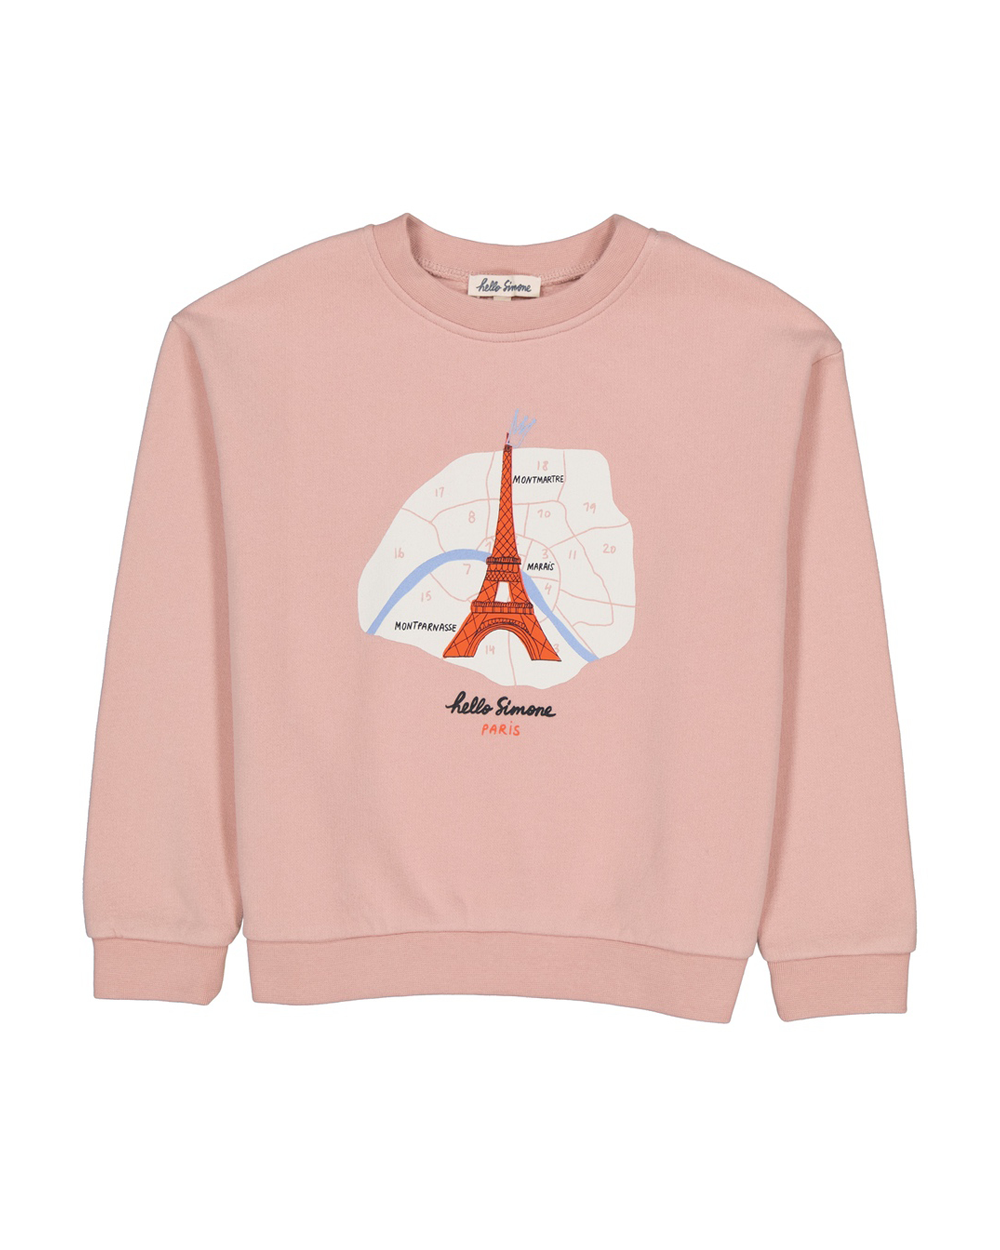 [HELLO SIMONE] Sweety sweatshirt PARIS Girls t-shirt [6Y, 10Y, 12Y]